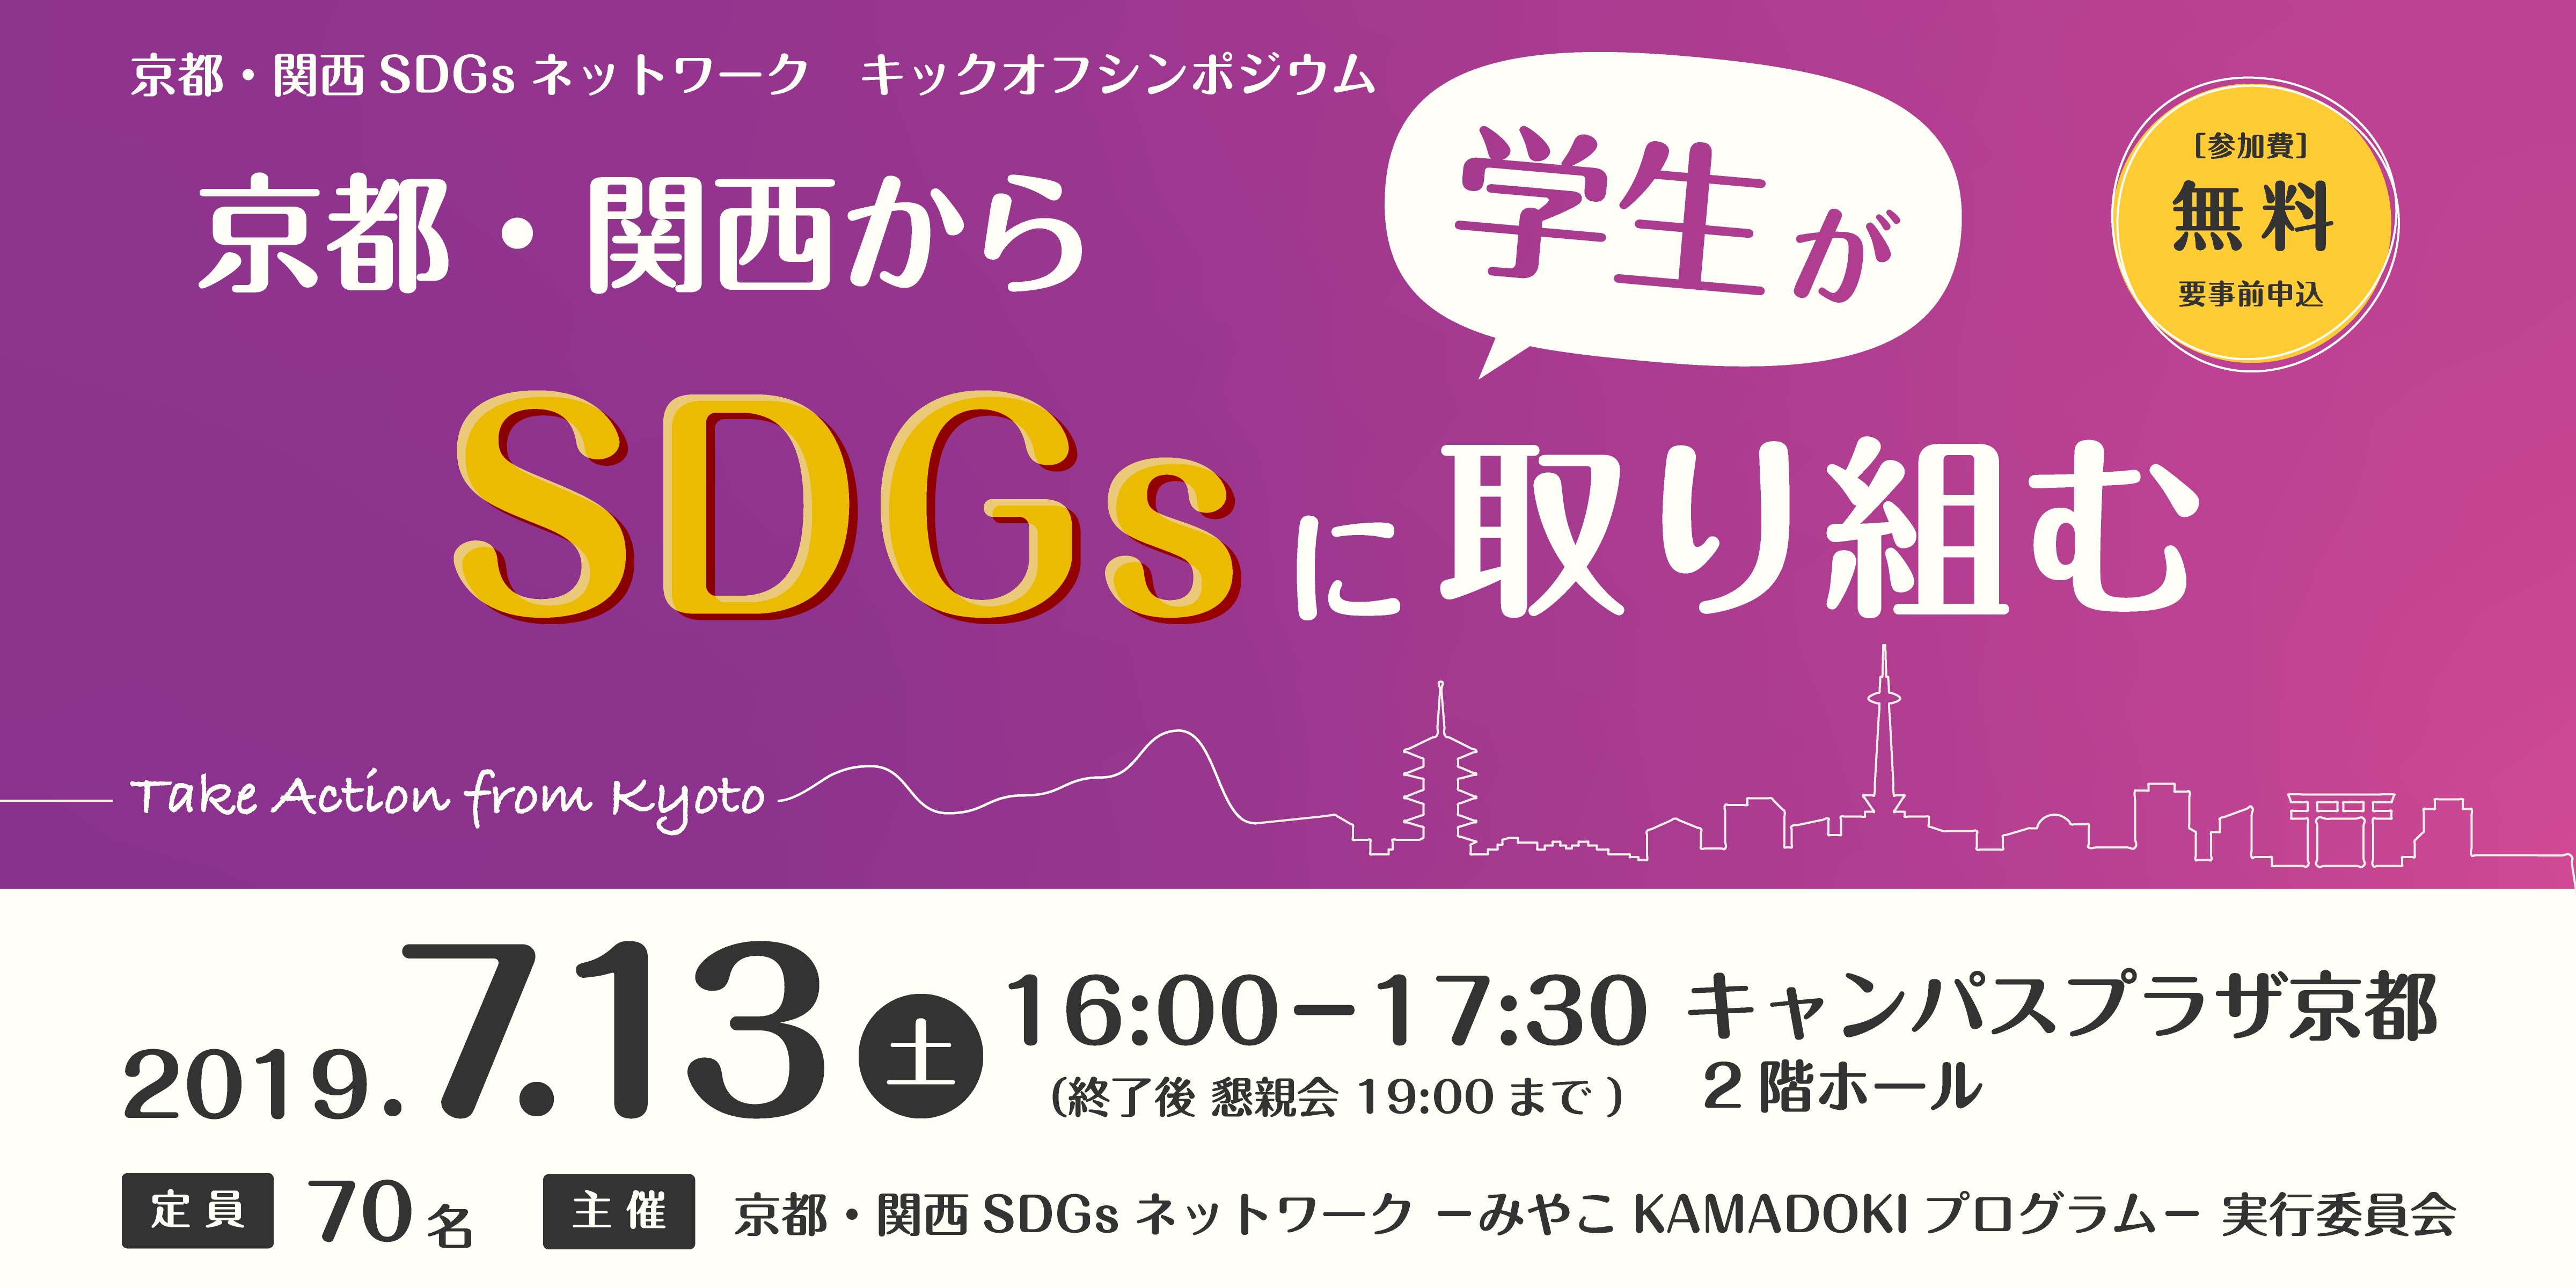 【イベント】みやこKAMADOKIプログラム キックオフを開催しました。